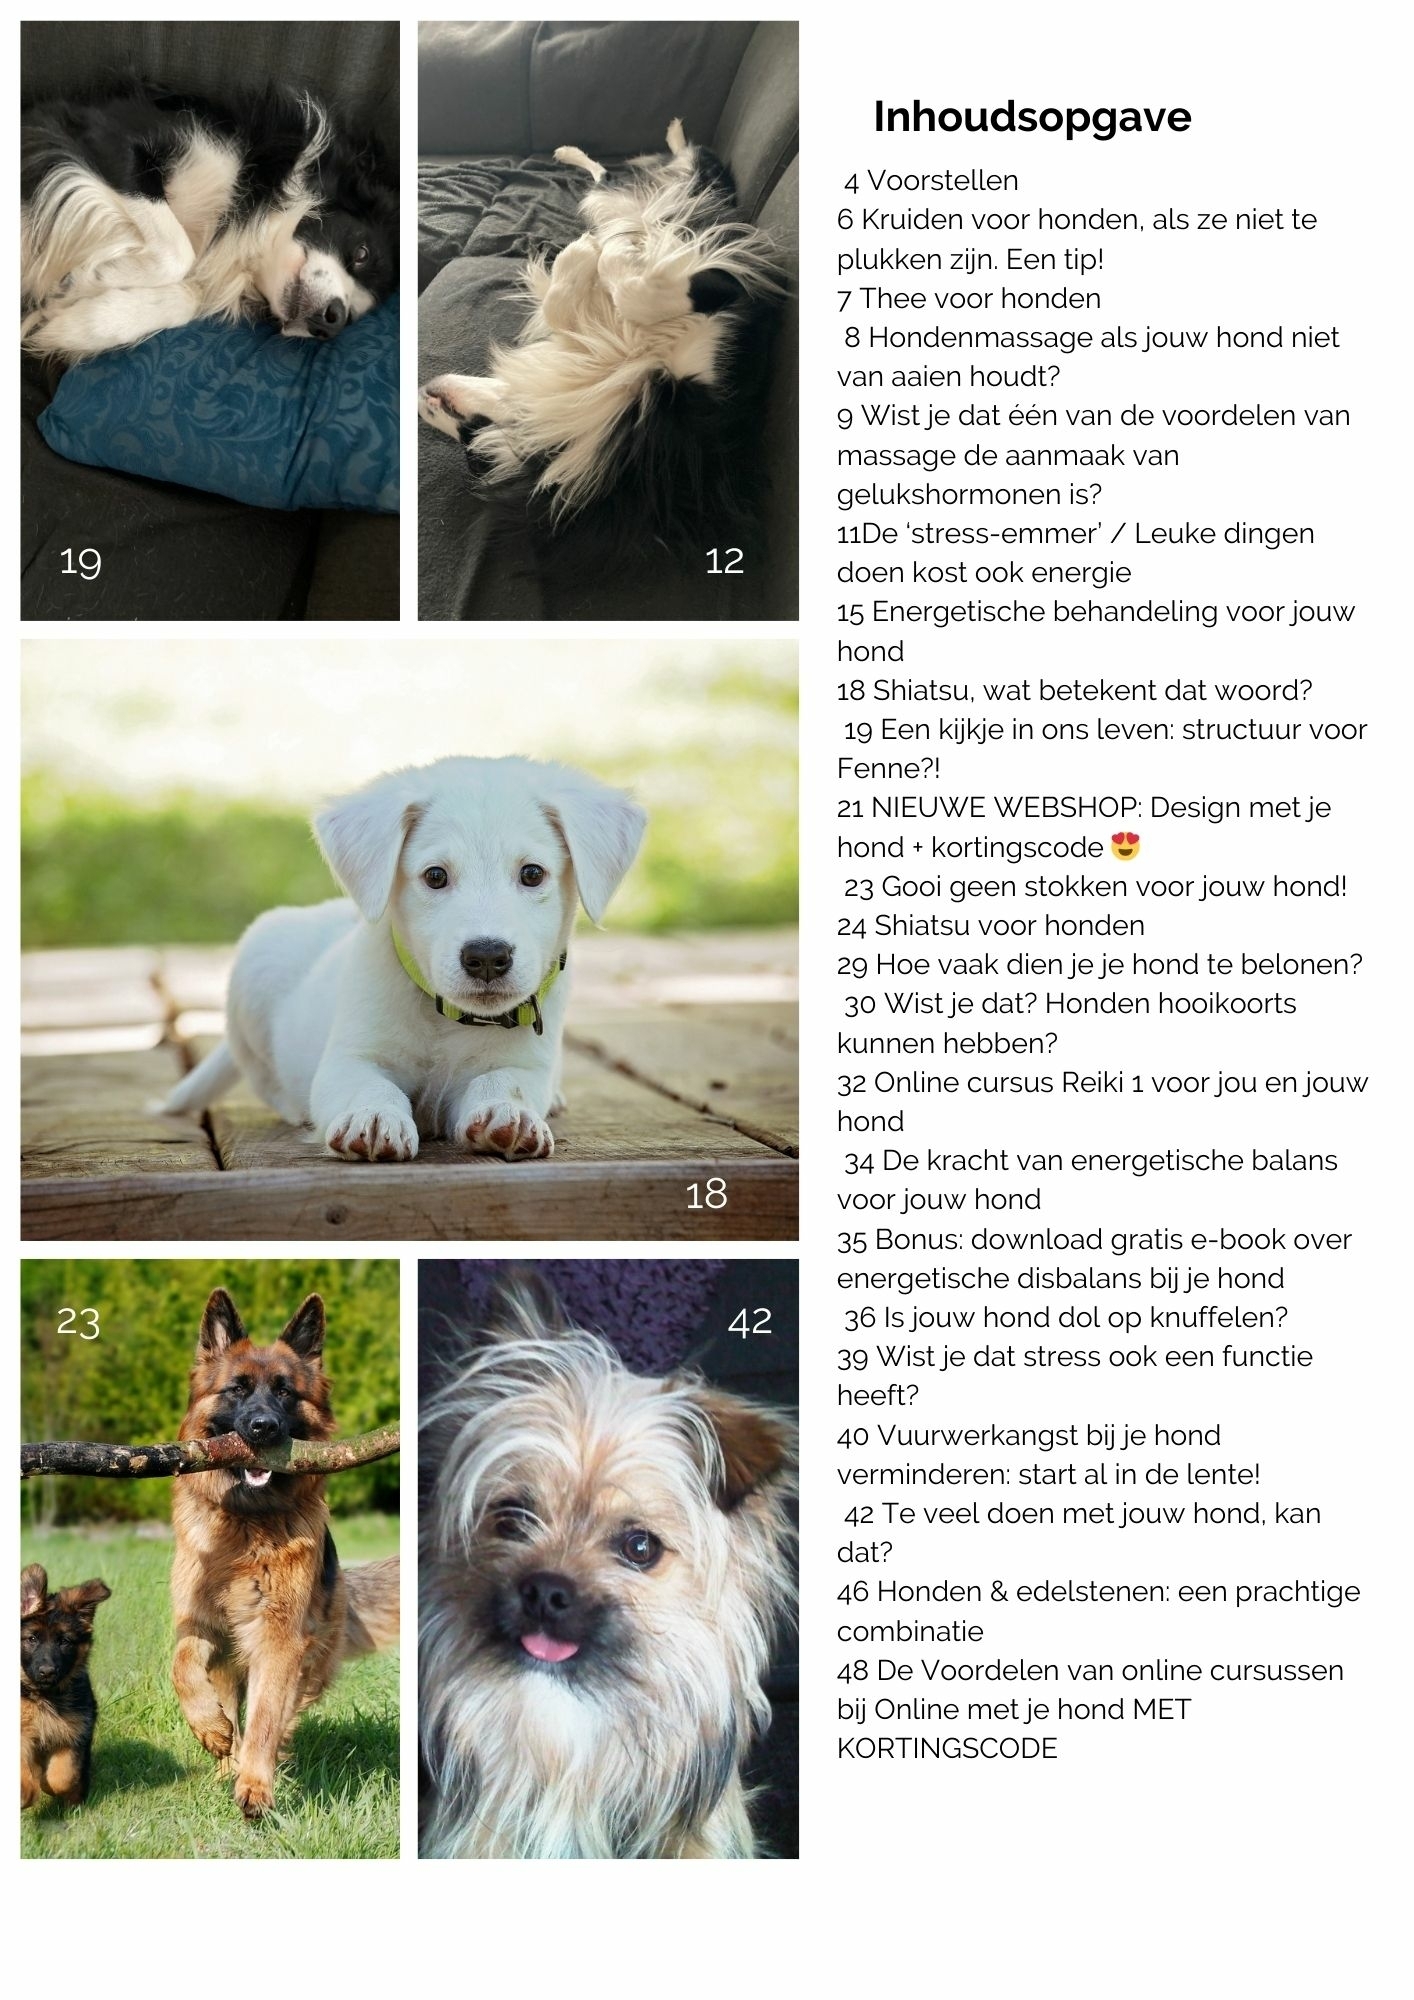 Tips voor honden in het gratis tijdschrift van Online met je hond